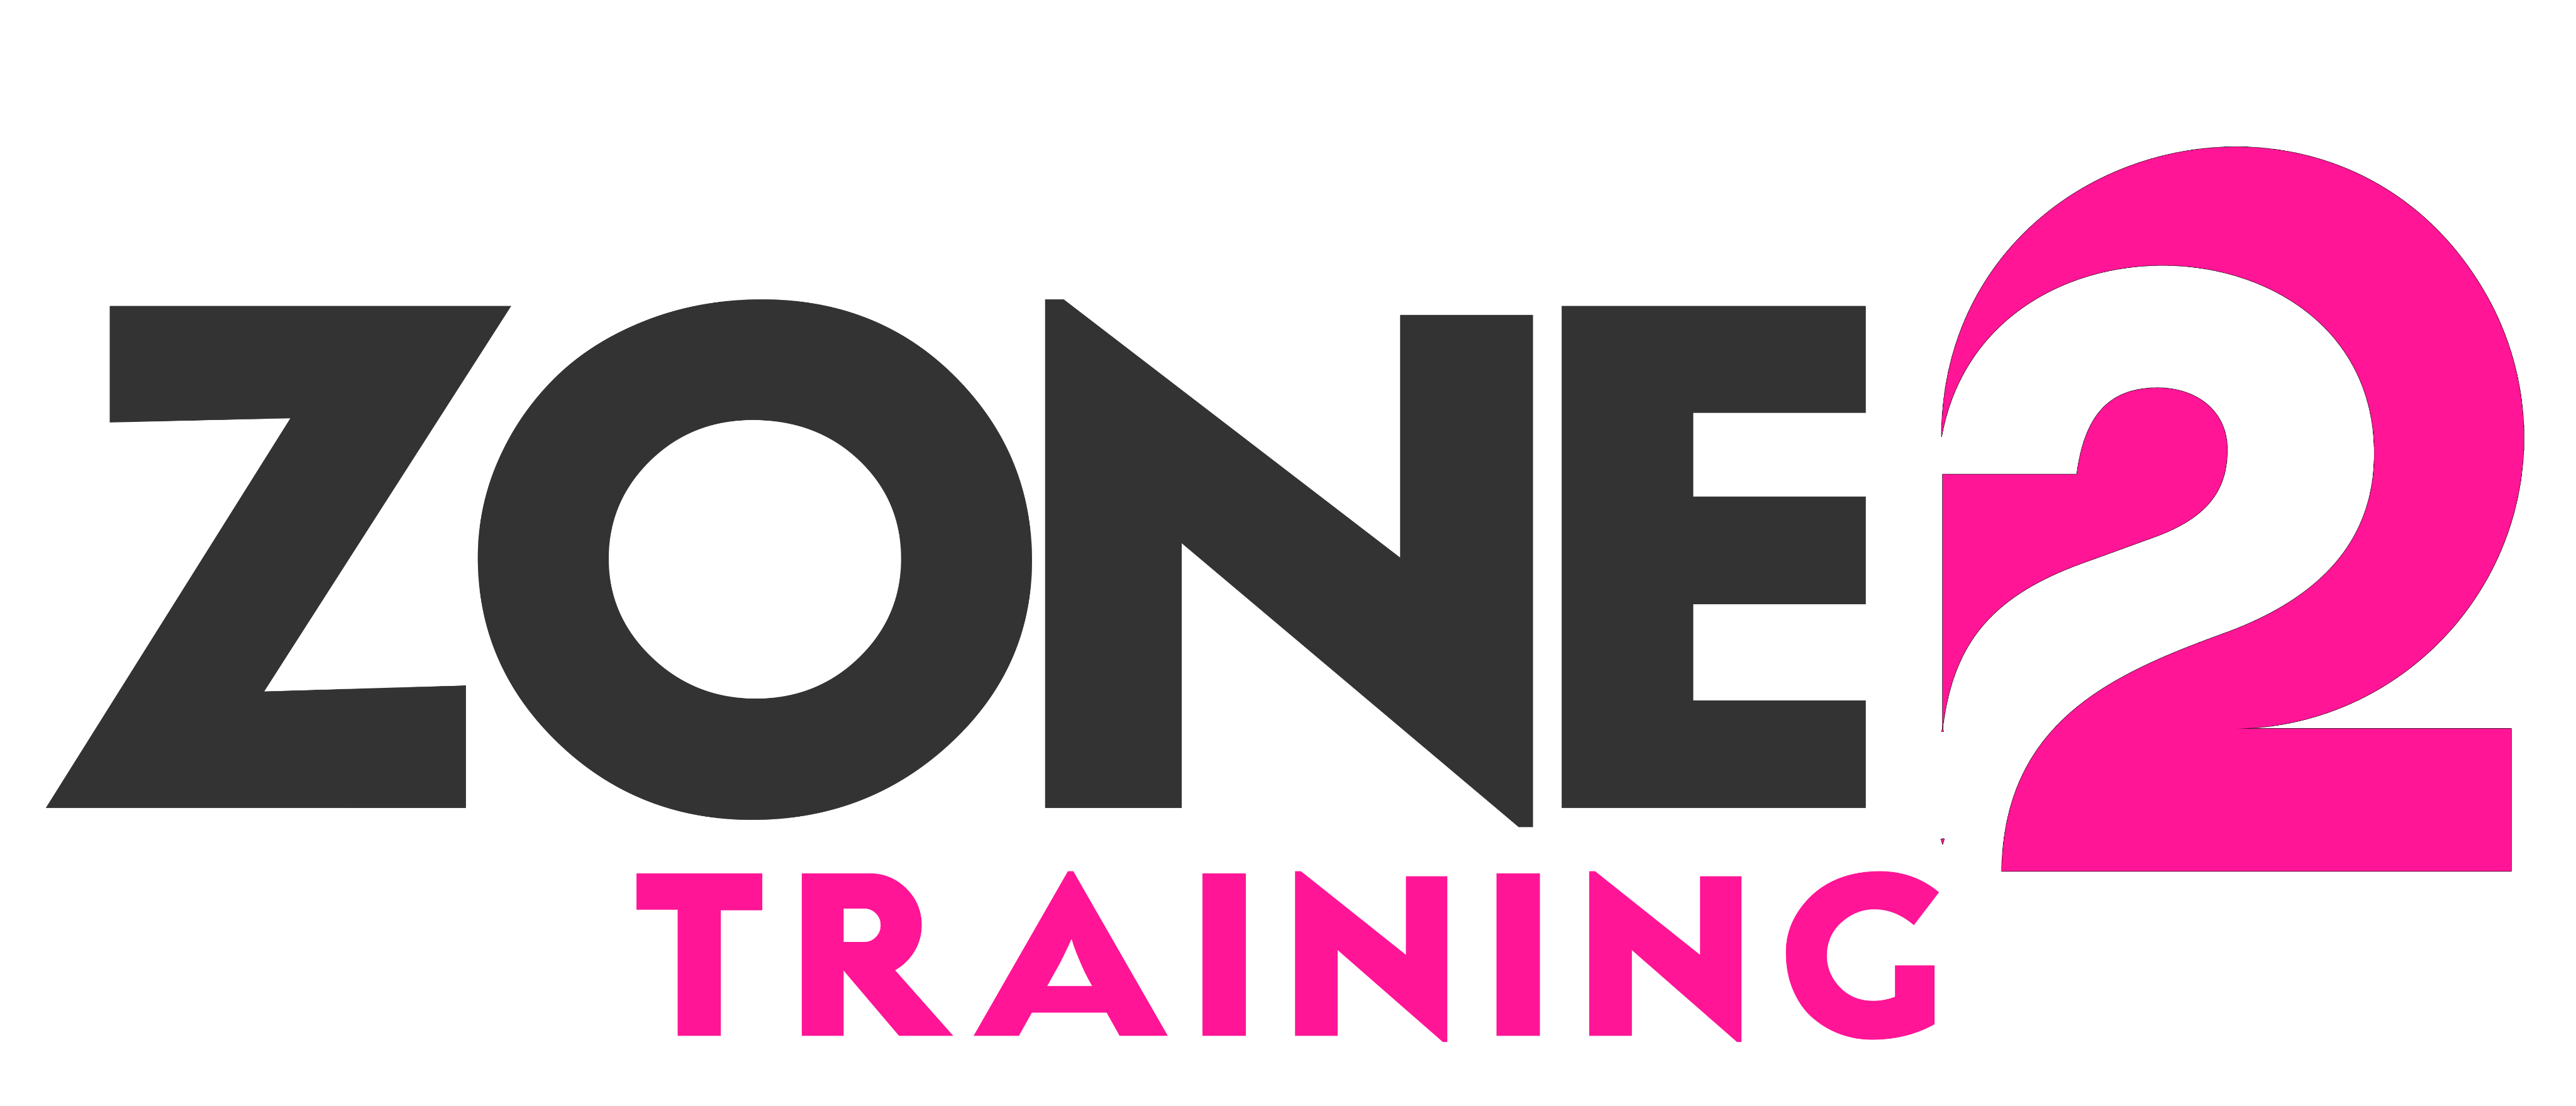 Zone2 Training Image 1